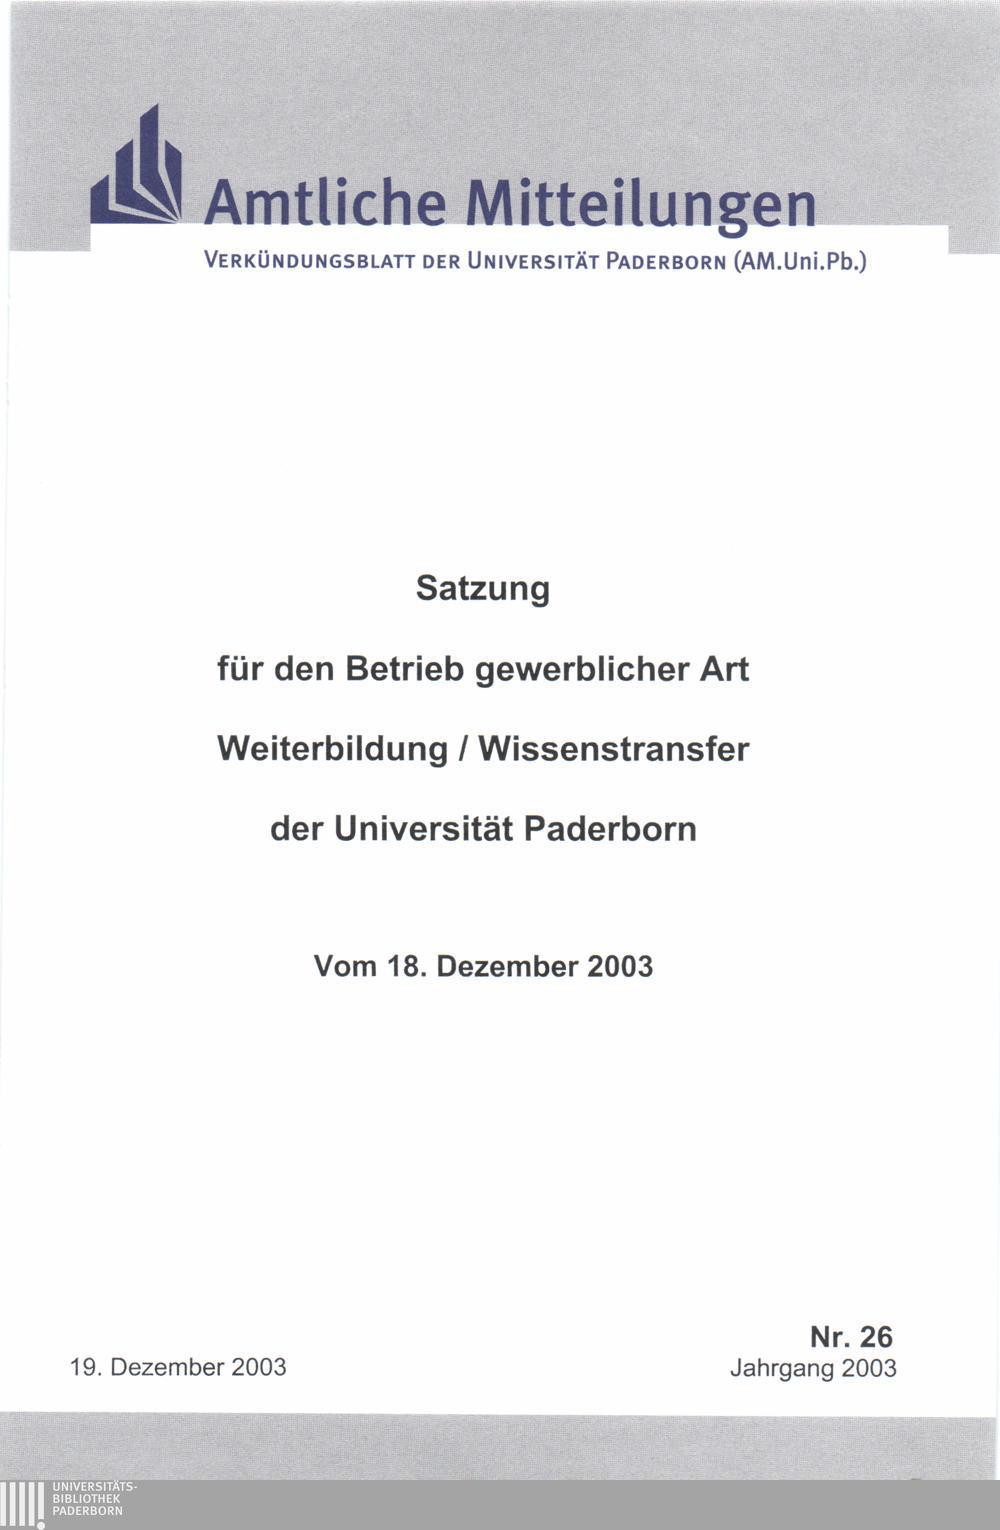 ISS Amtliche Mitteilungen Verkündungsblatt der Universität Paderborn (AM.Uni.Pb.